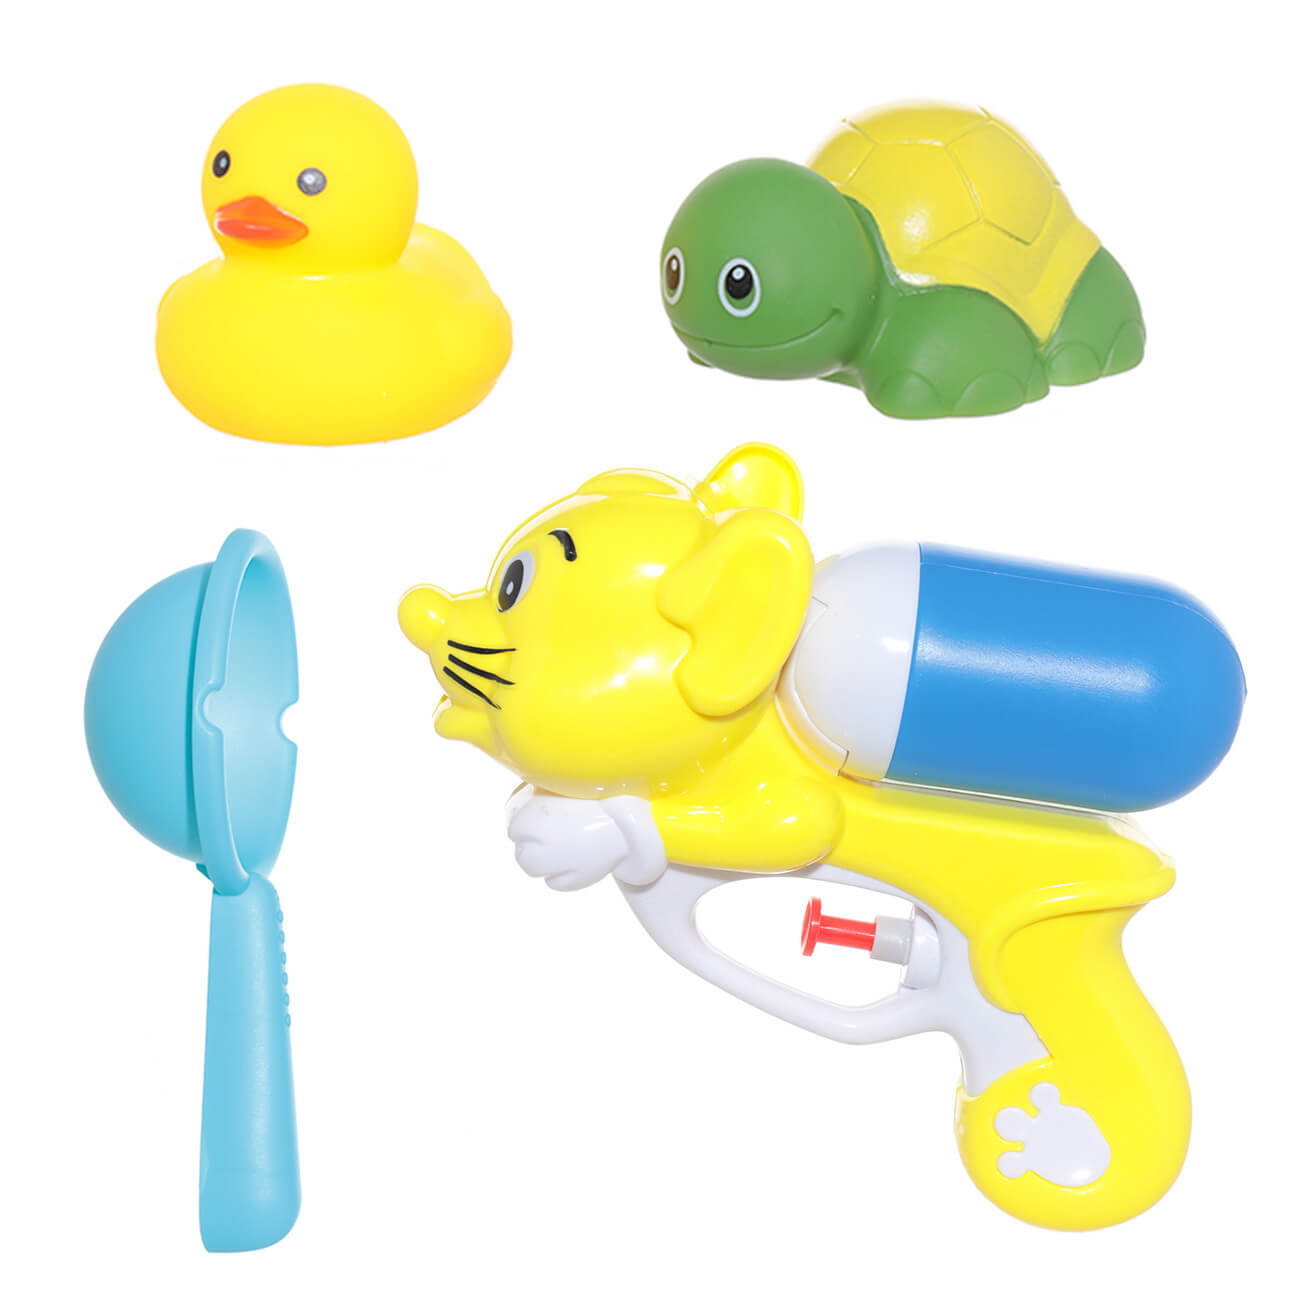 Набор игрушек для купания, 4 пр, водный пистолет/игрушки, резина/пластик, желтый, Duck набор игрушек для купания 5 пр с подсветкой сачок игрушки пластик морские обитатели game